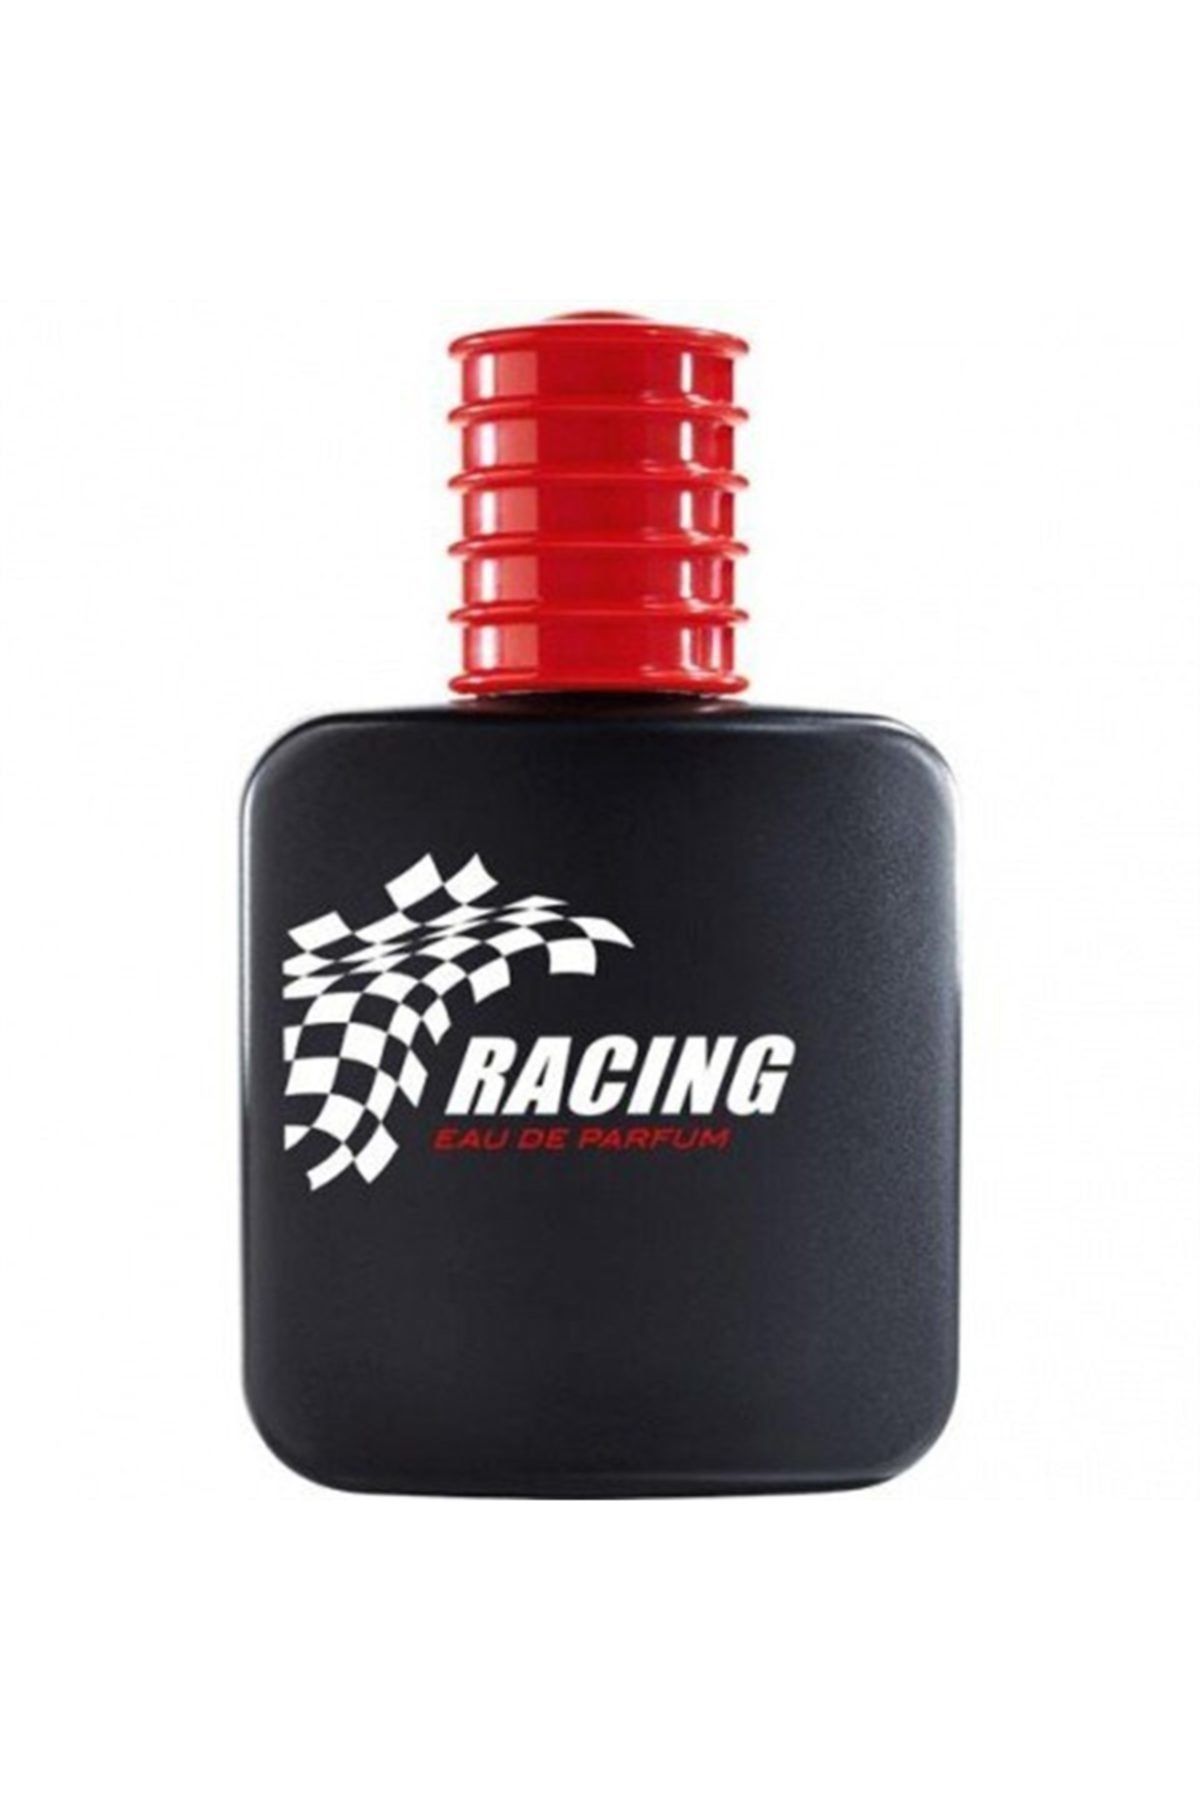 LR Racing Parfüm